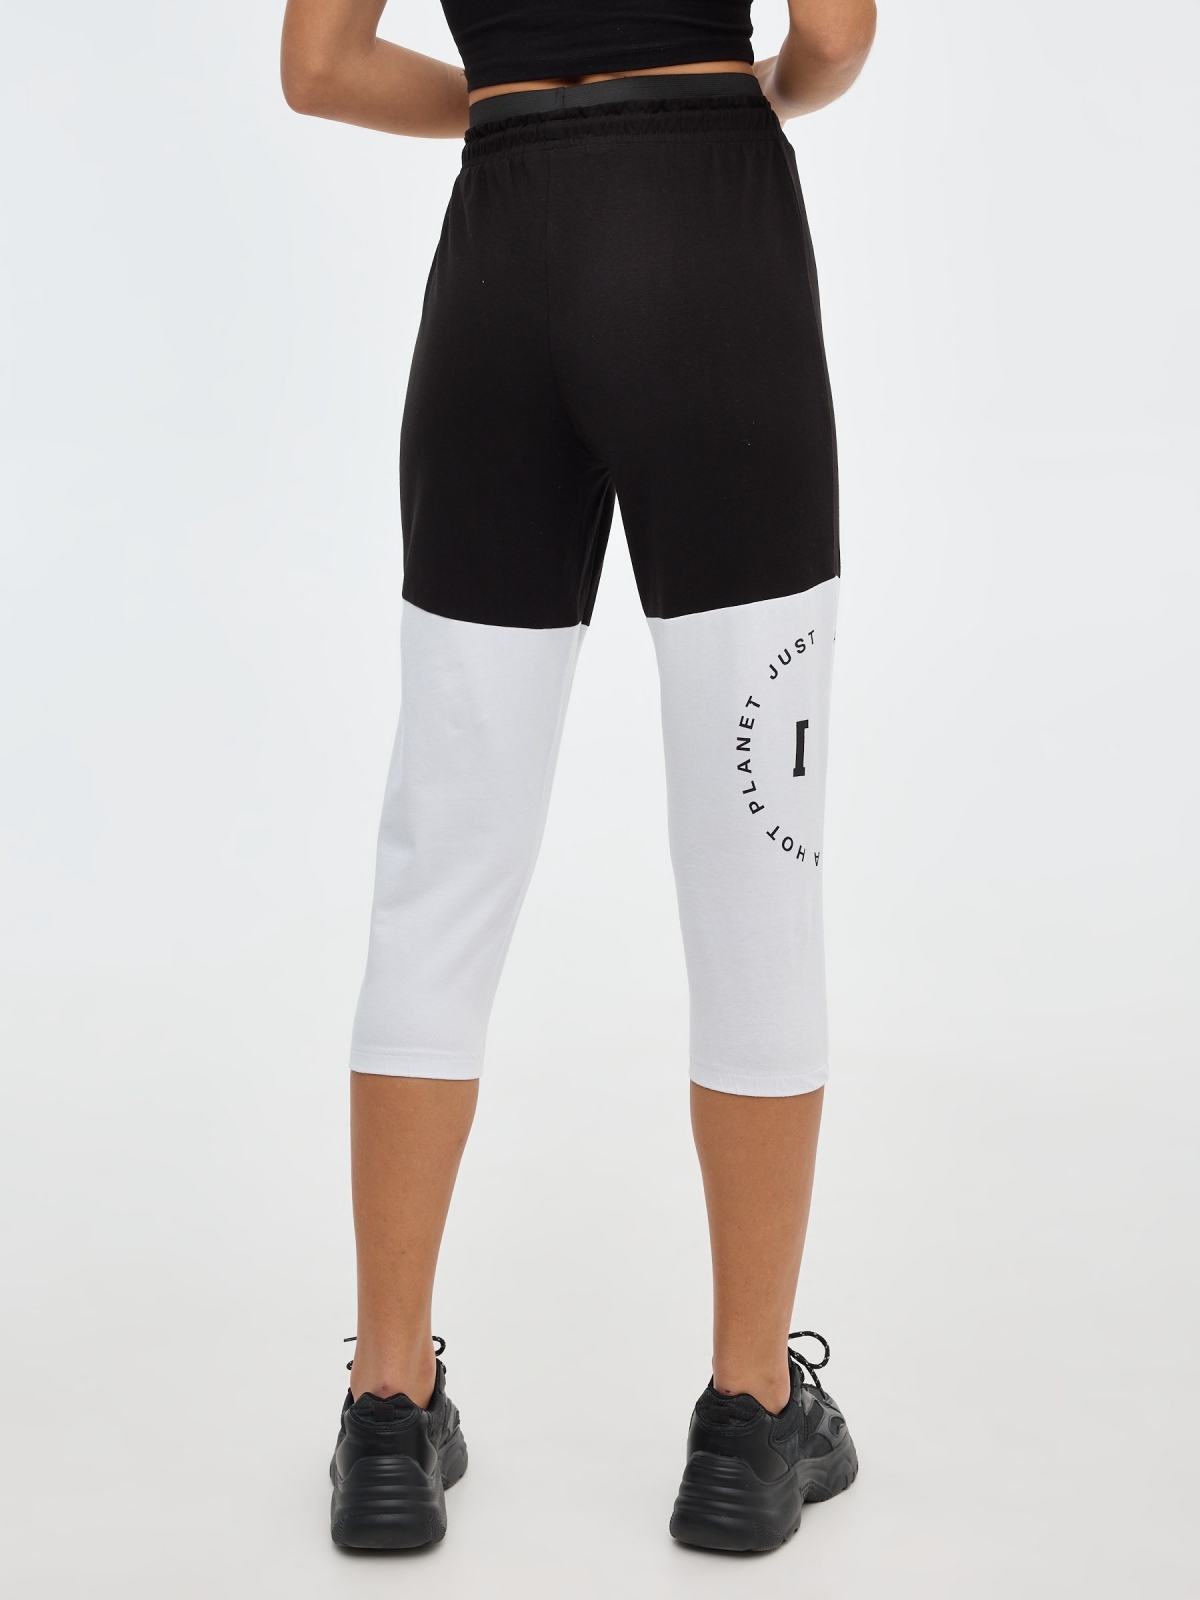 Block color jogger pants black front view